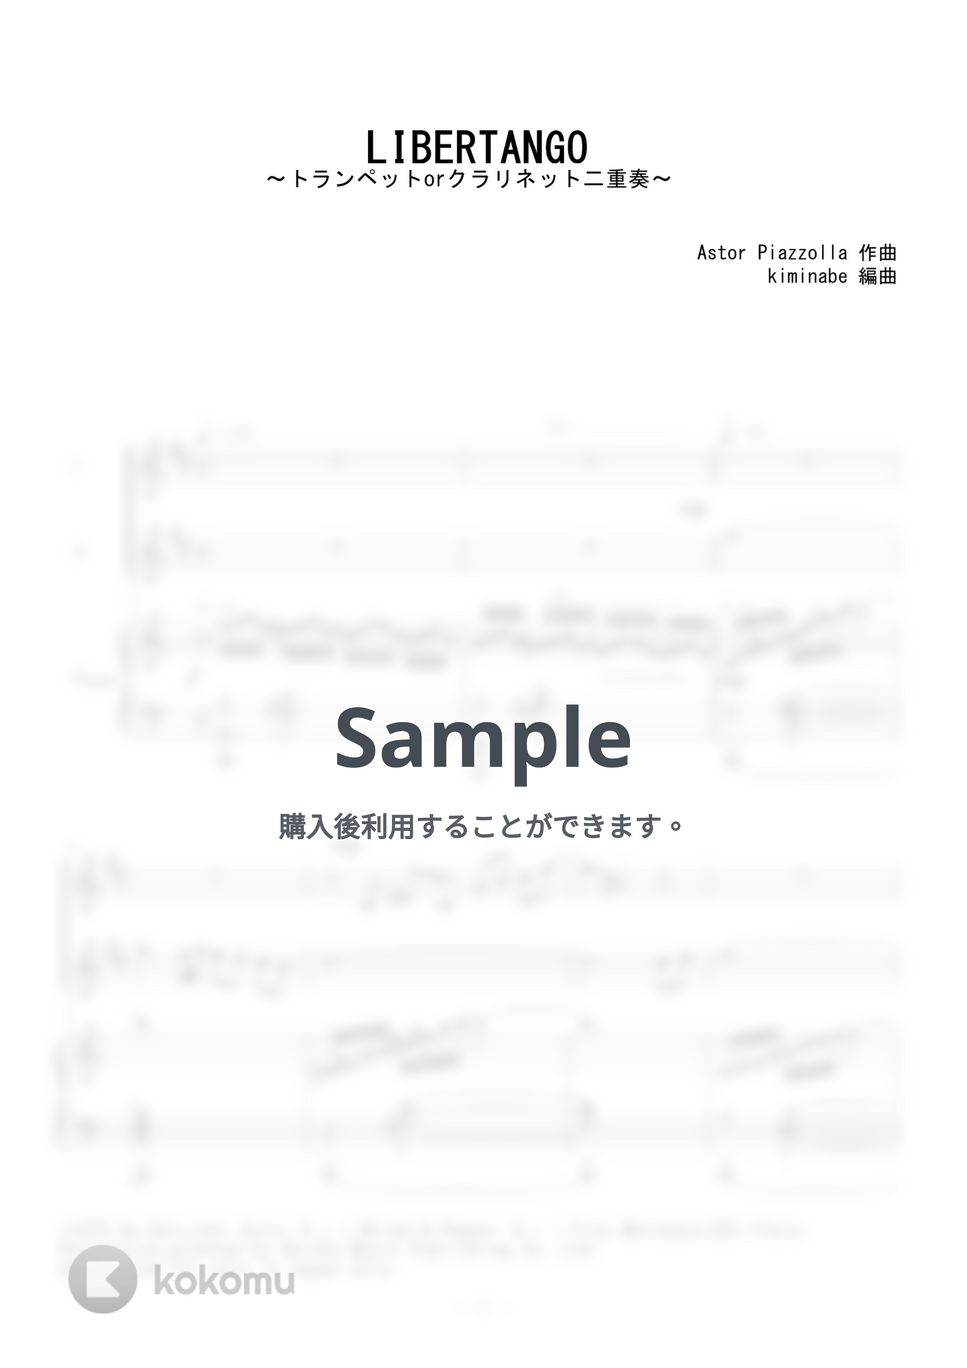 ピアソラ - LIBERTANGO (トランペットorクラリネット二重奏) by kiminabe